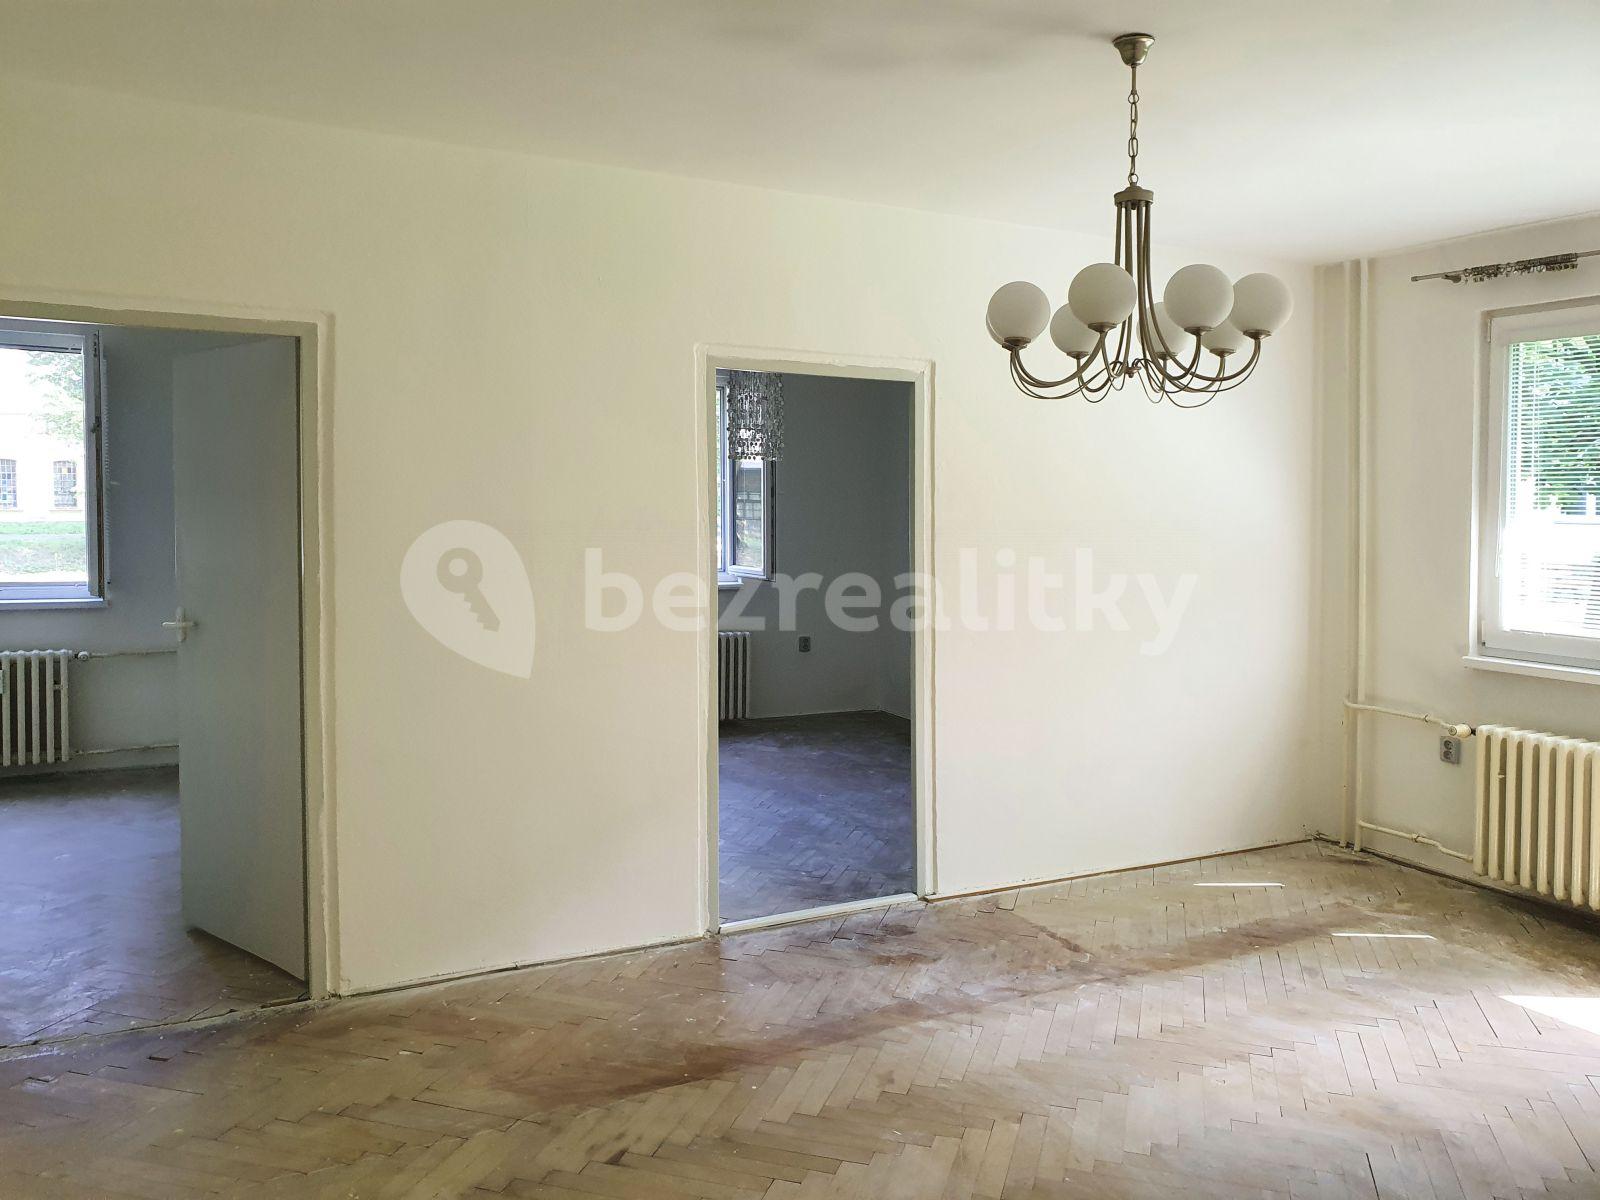 3 bedroom flat for sale, 62 m², Šternberk, Olomoucký Region